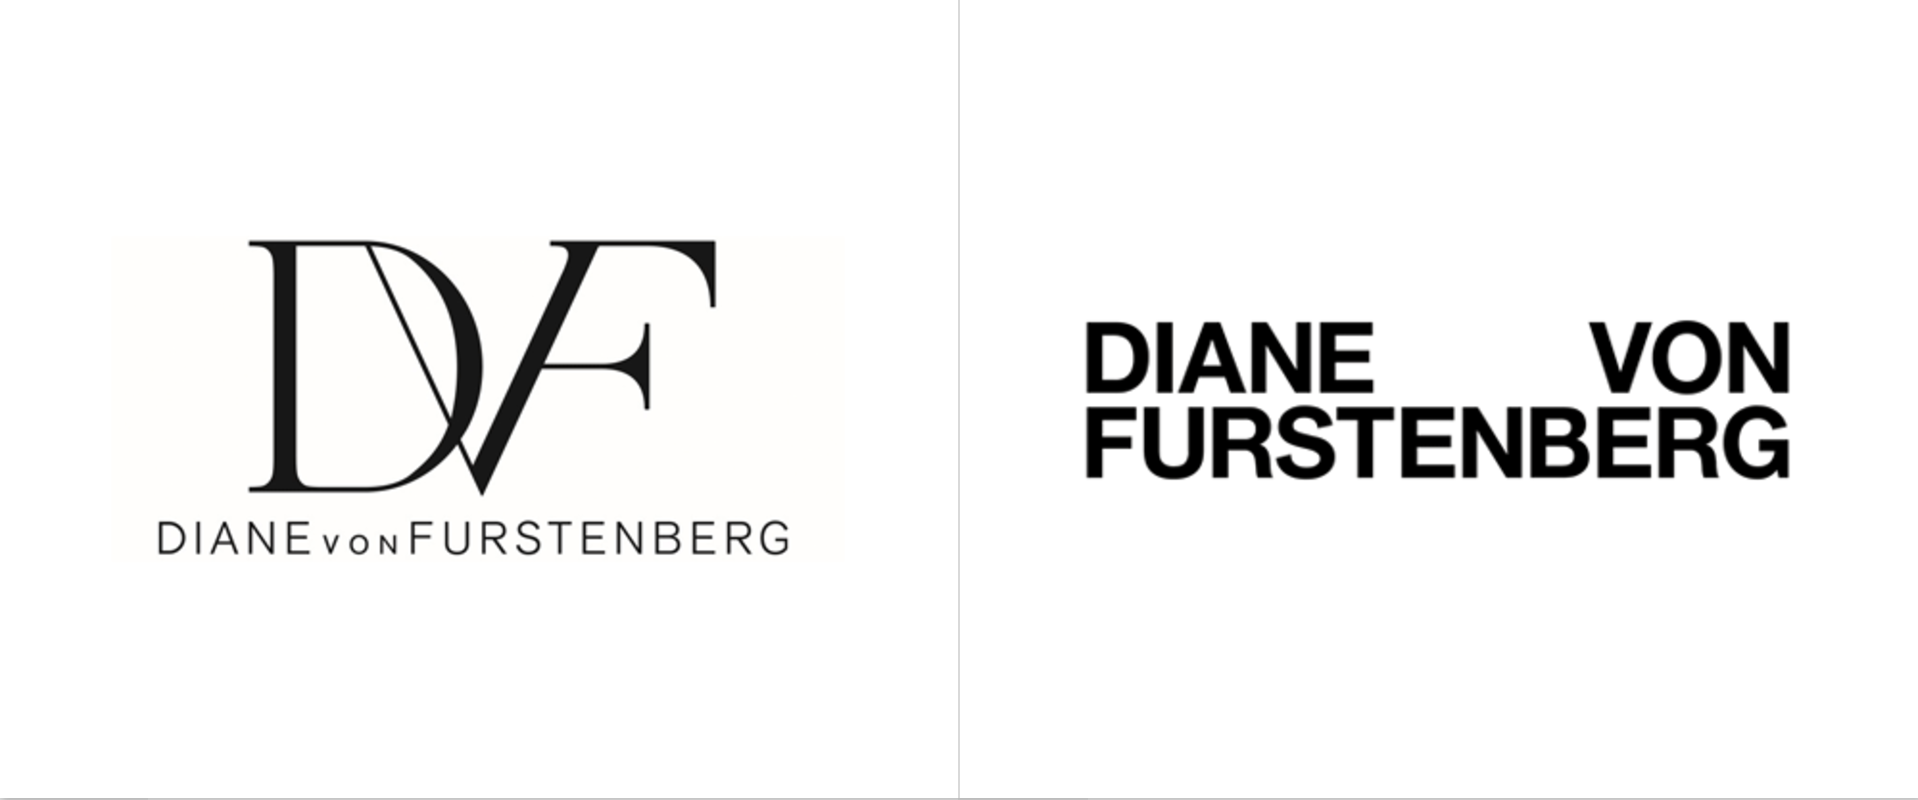 Diane von Furstenberg: Old vs. New Logo. Photo courtesy: Jonny Lu Studio